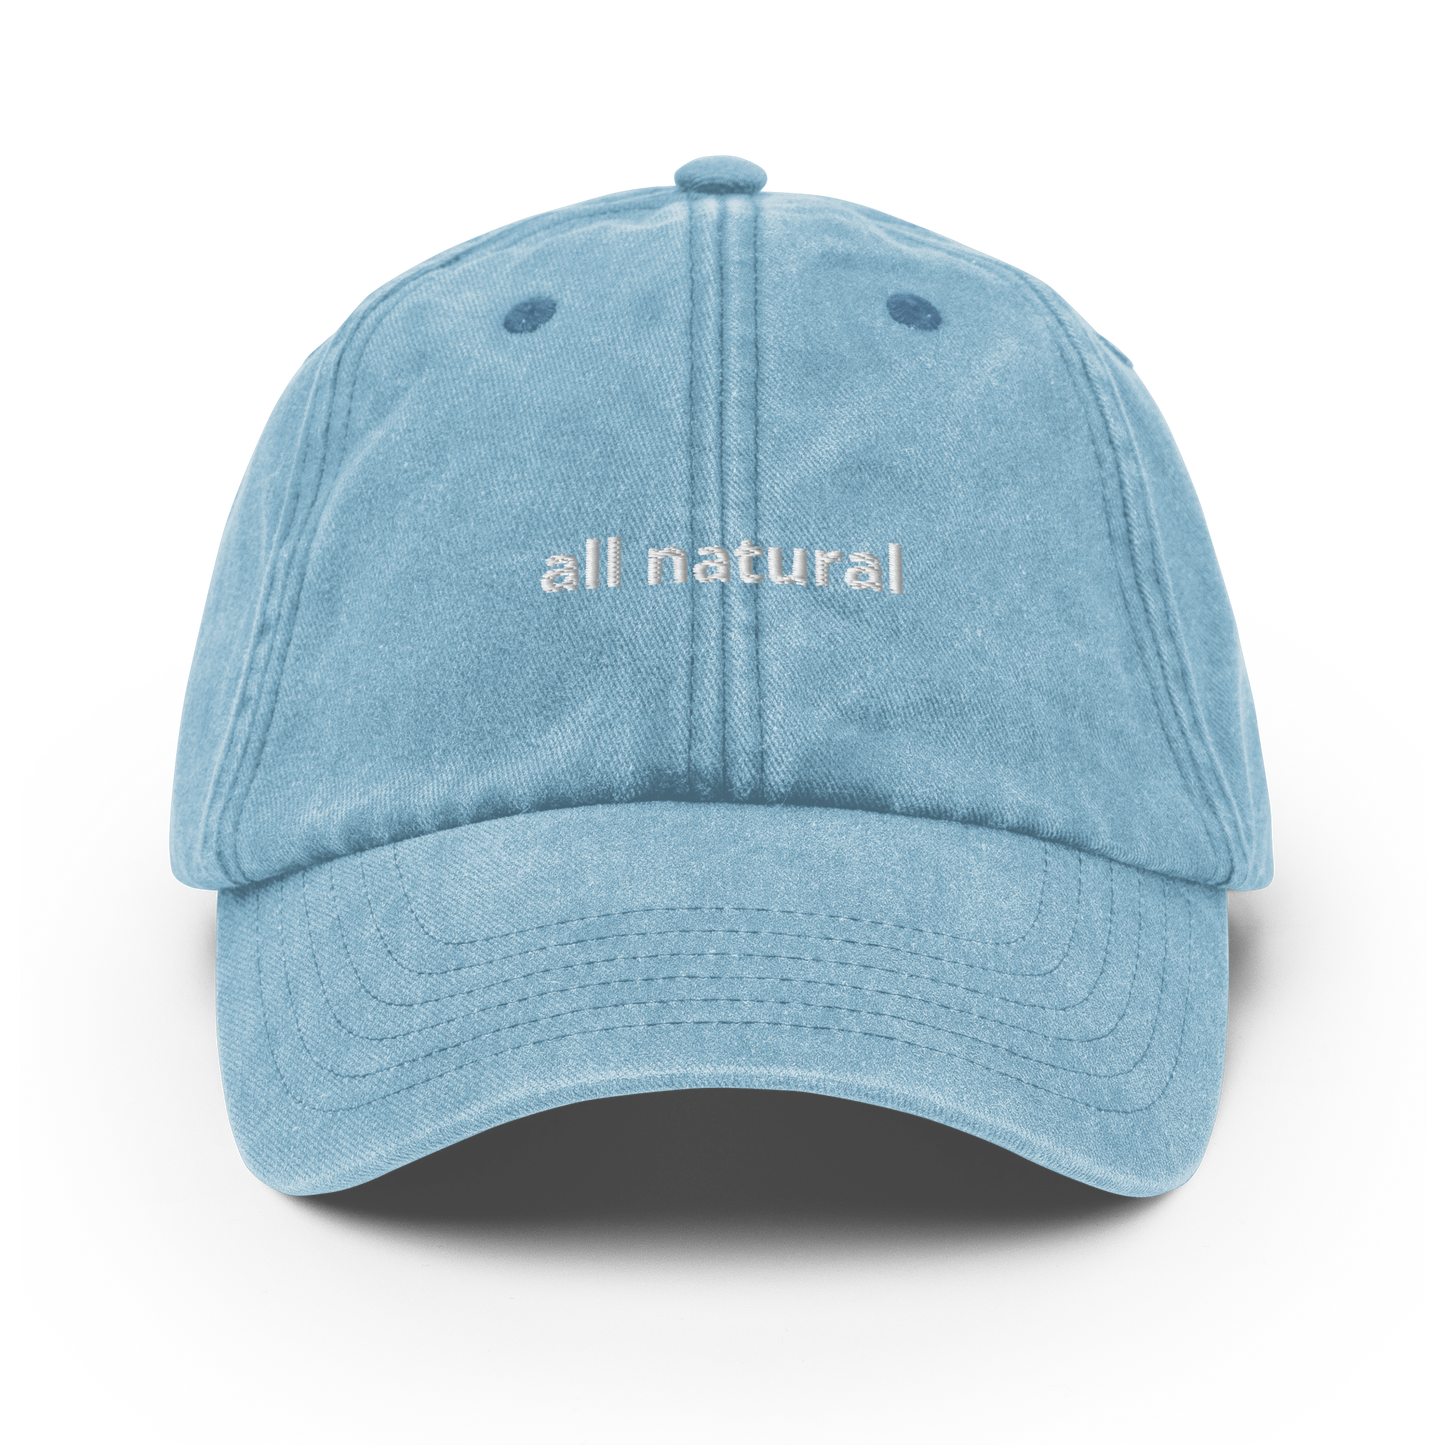 All natural - Vintage Hat